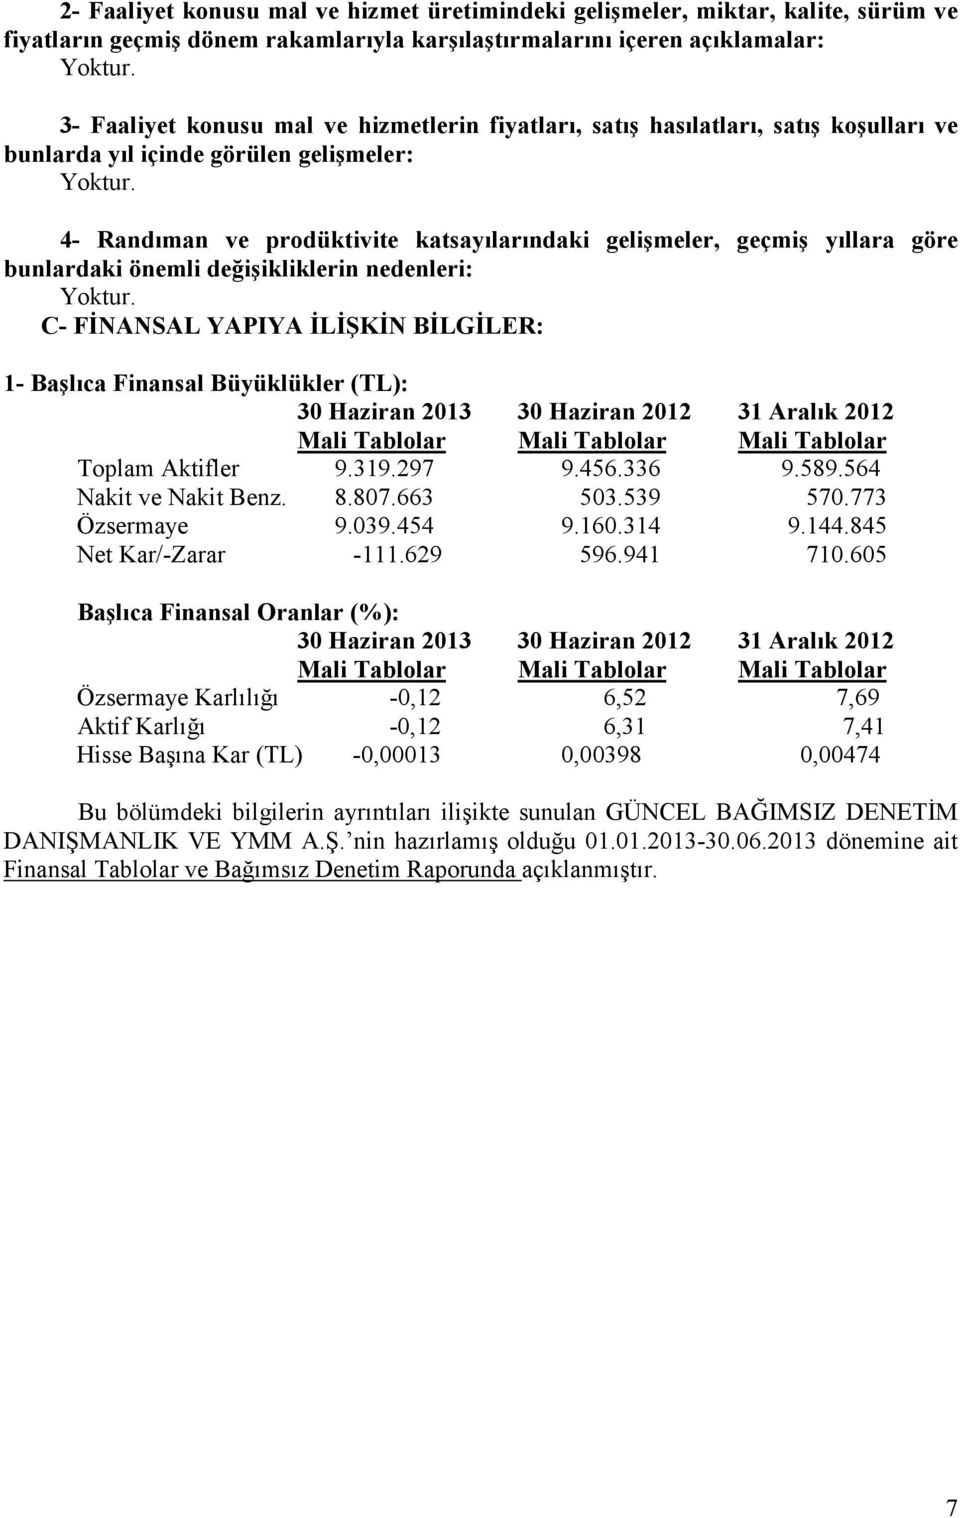 nedenleri: C- FĐNANSAL YAPIYA ĐLĐŞKĐN BĐLGĐLER: 1- Başlıca Finansal Büyüklükler (TL): 30 Haziran 2013 30 Haziran 2012 31 Aralık 2012 Mali Tablolar Mali Tablolar Mali Tablolar Toplam Aktifler 9.319.